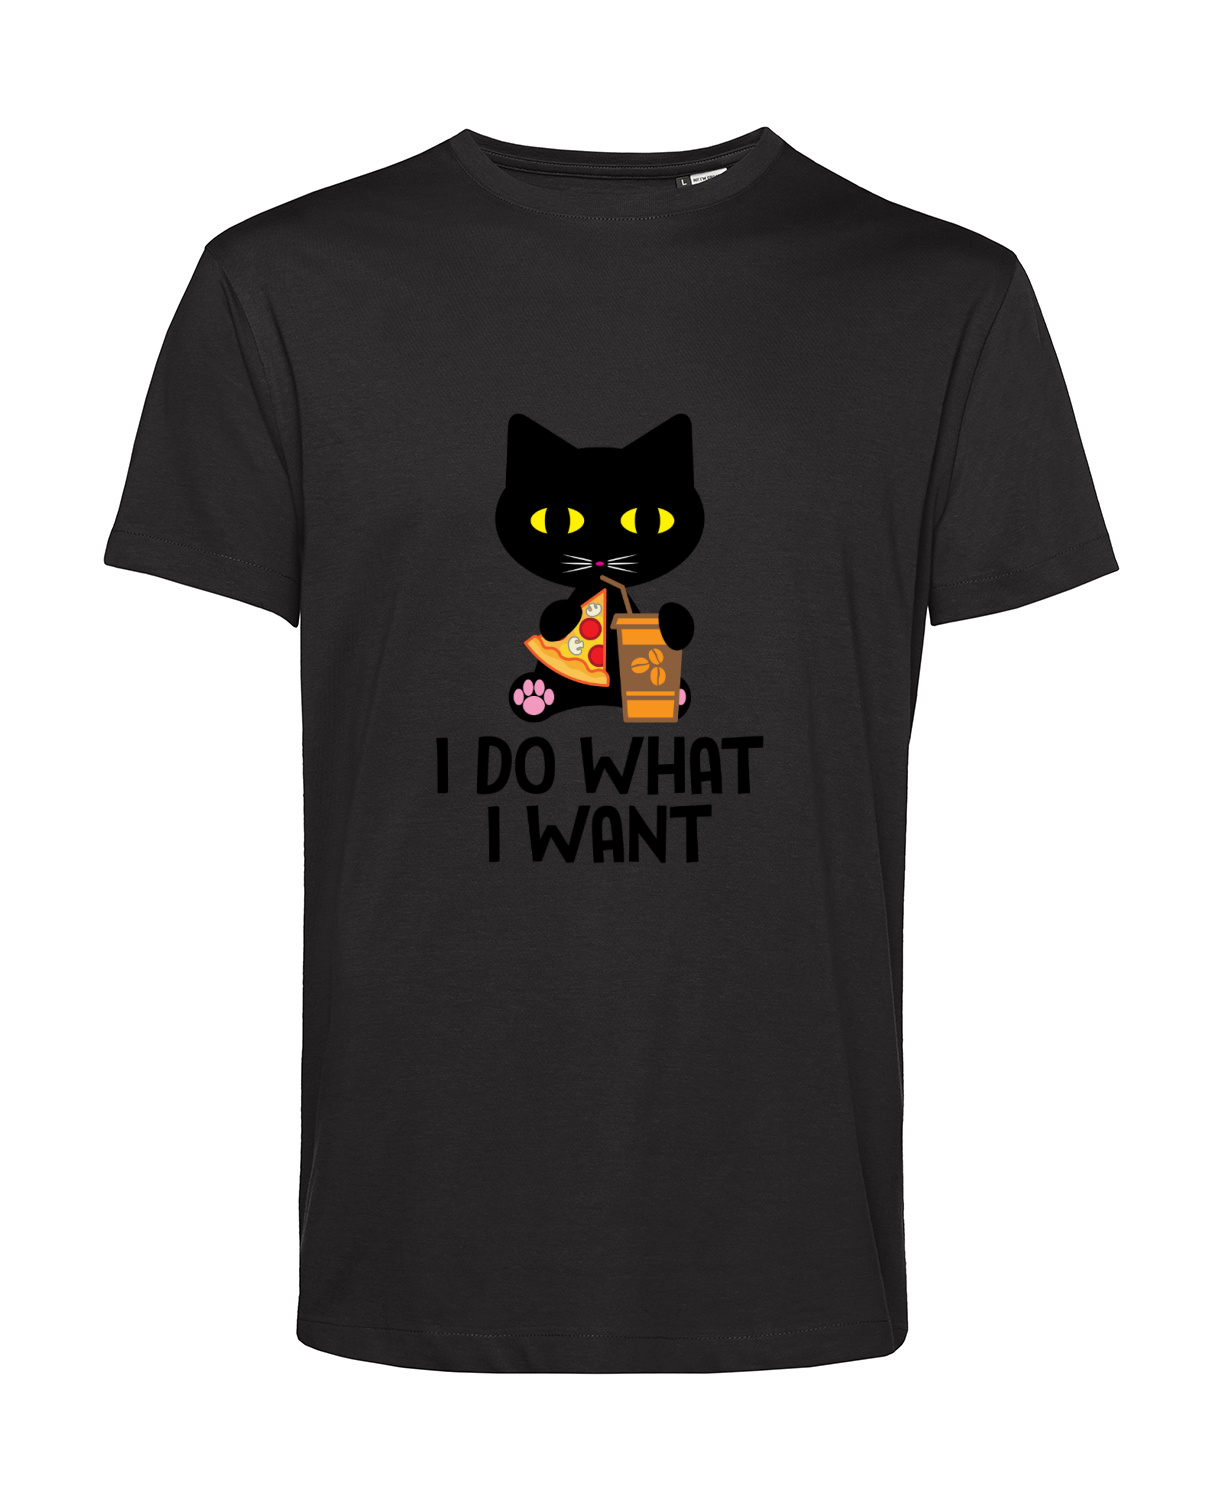 Nachhaltiges T-Shirt Herren Katzen - I do what I want